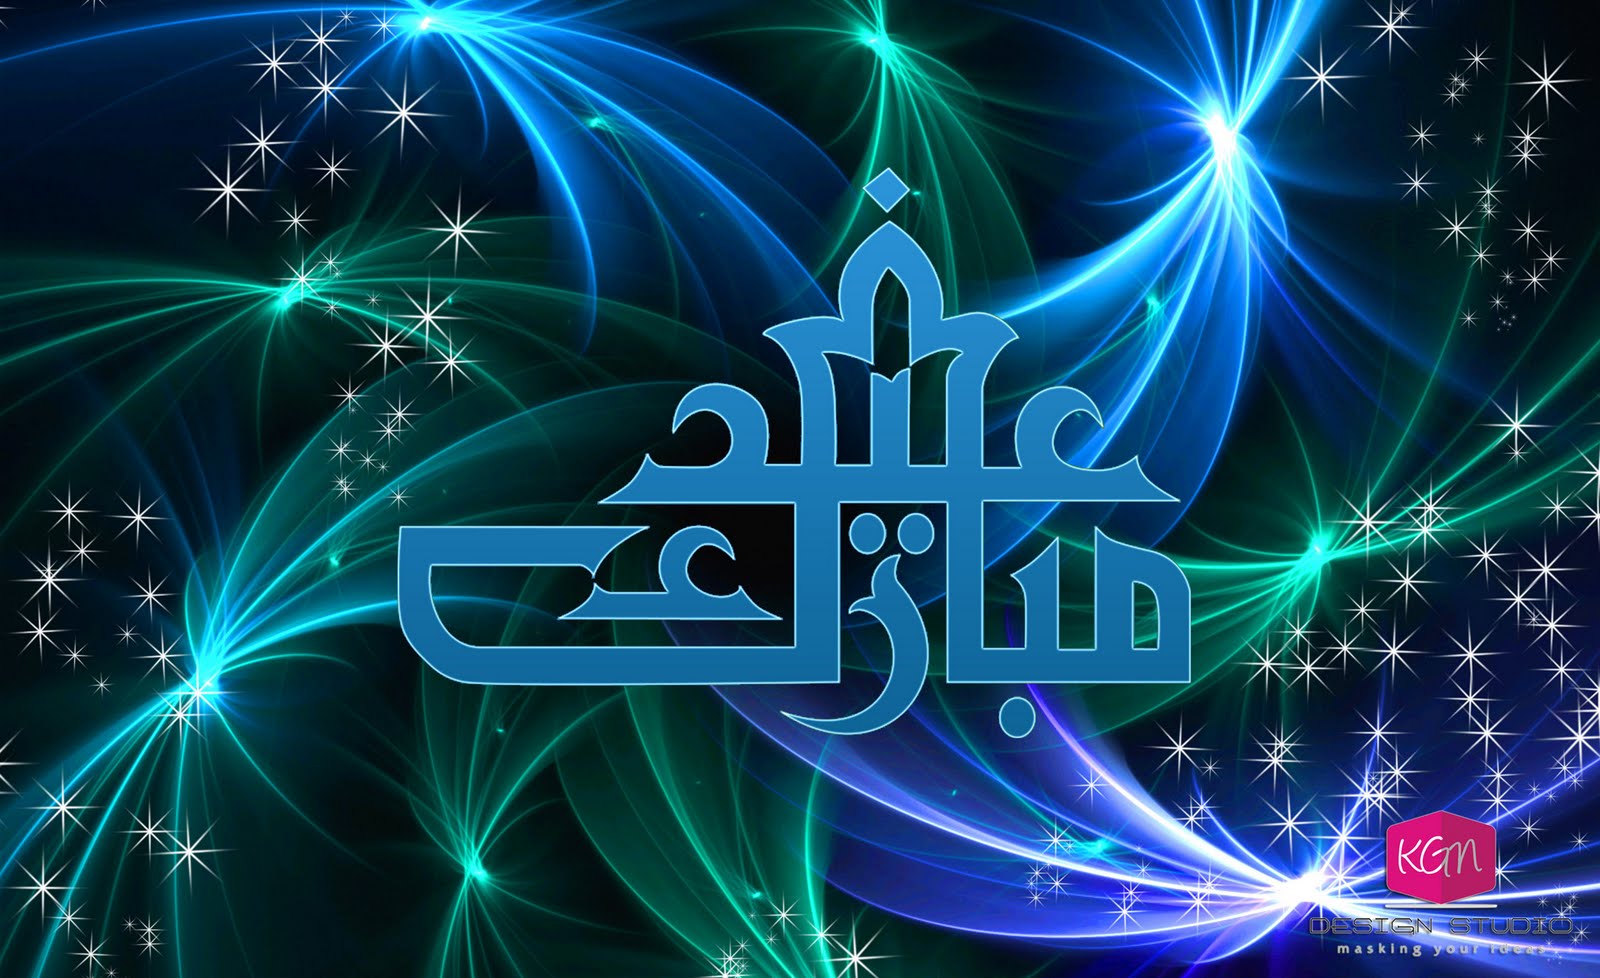 Attari Madani: 11 (Hajj n Eid wallpaper)